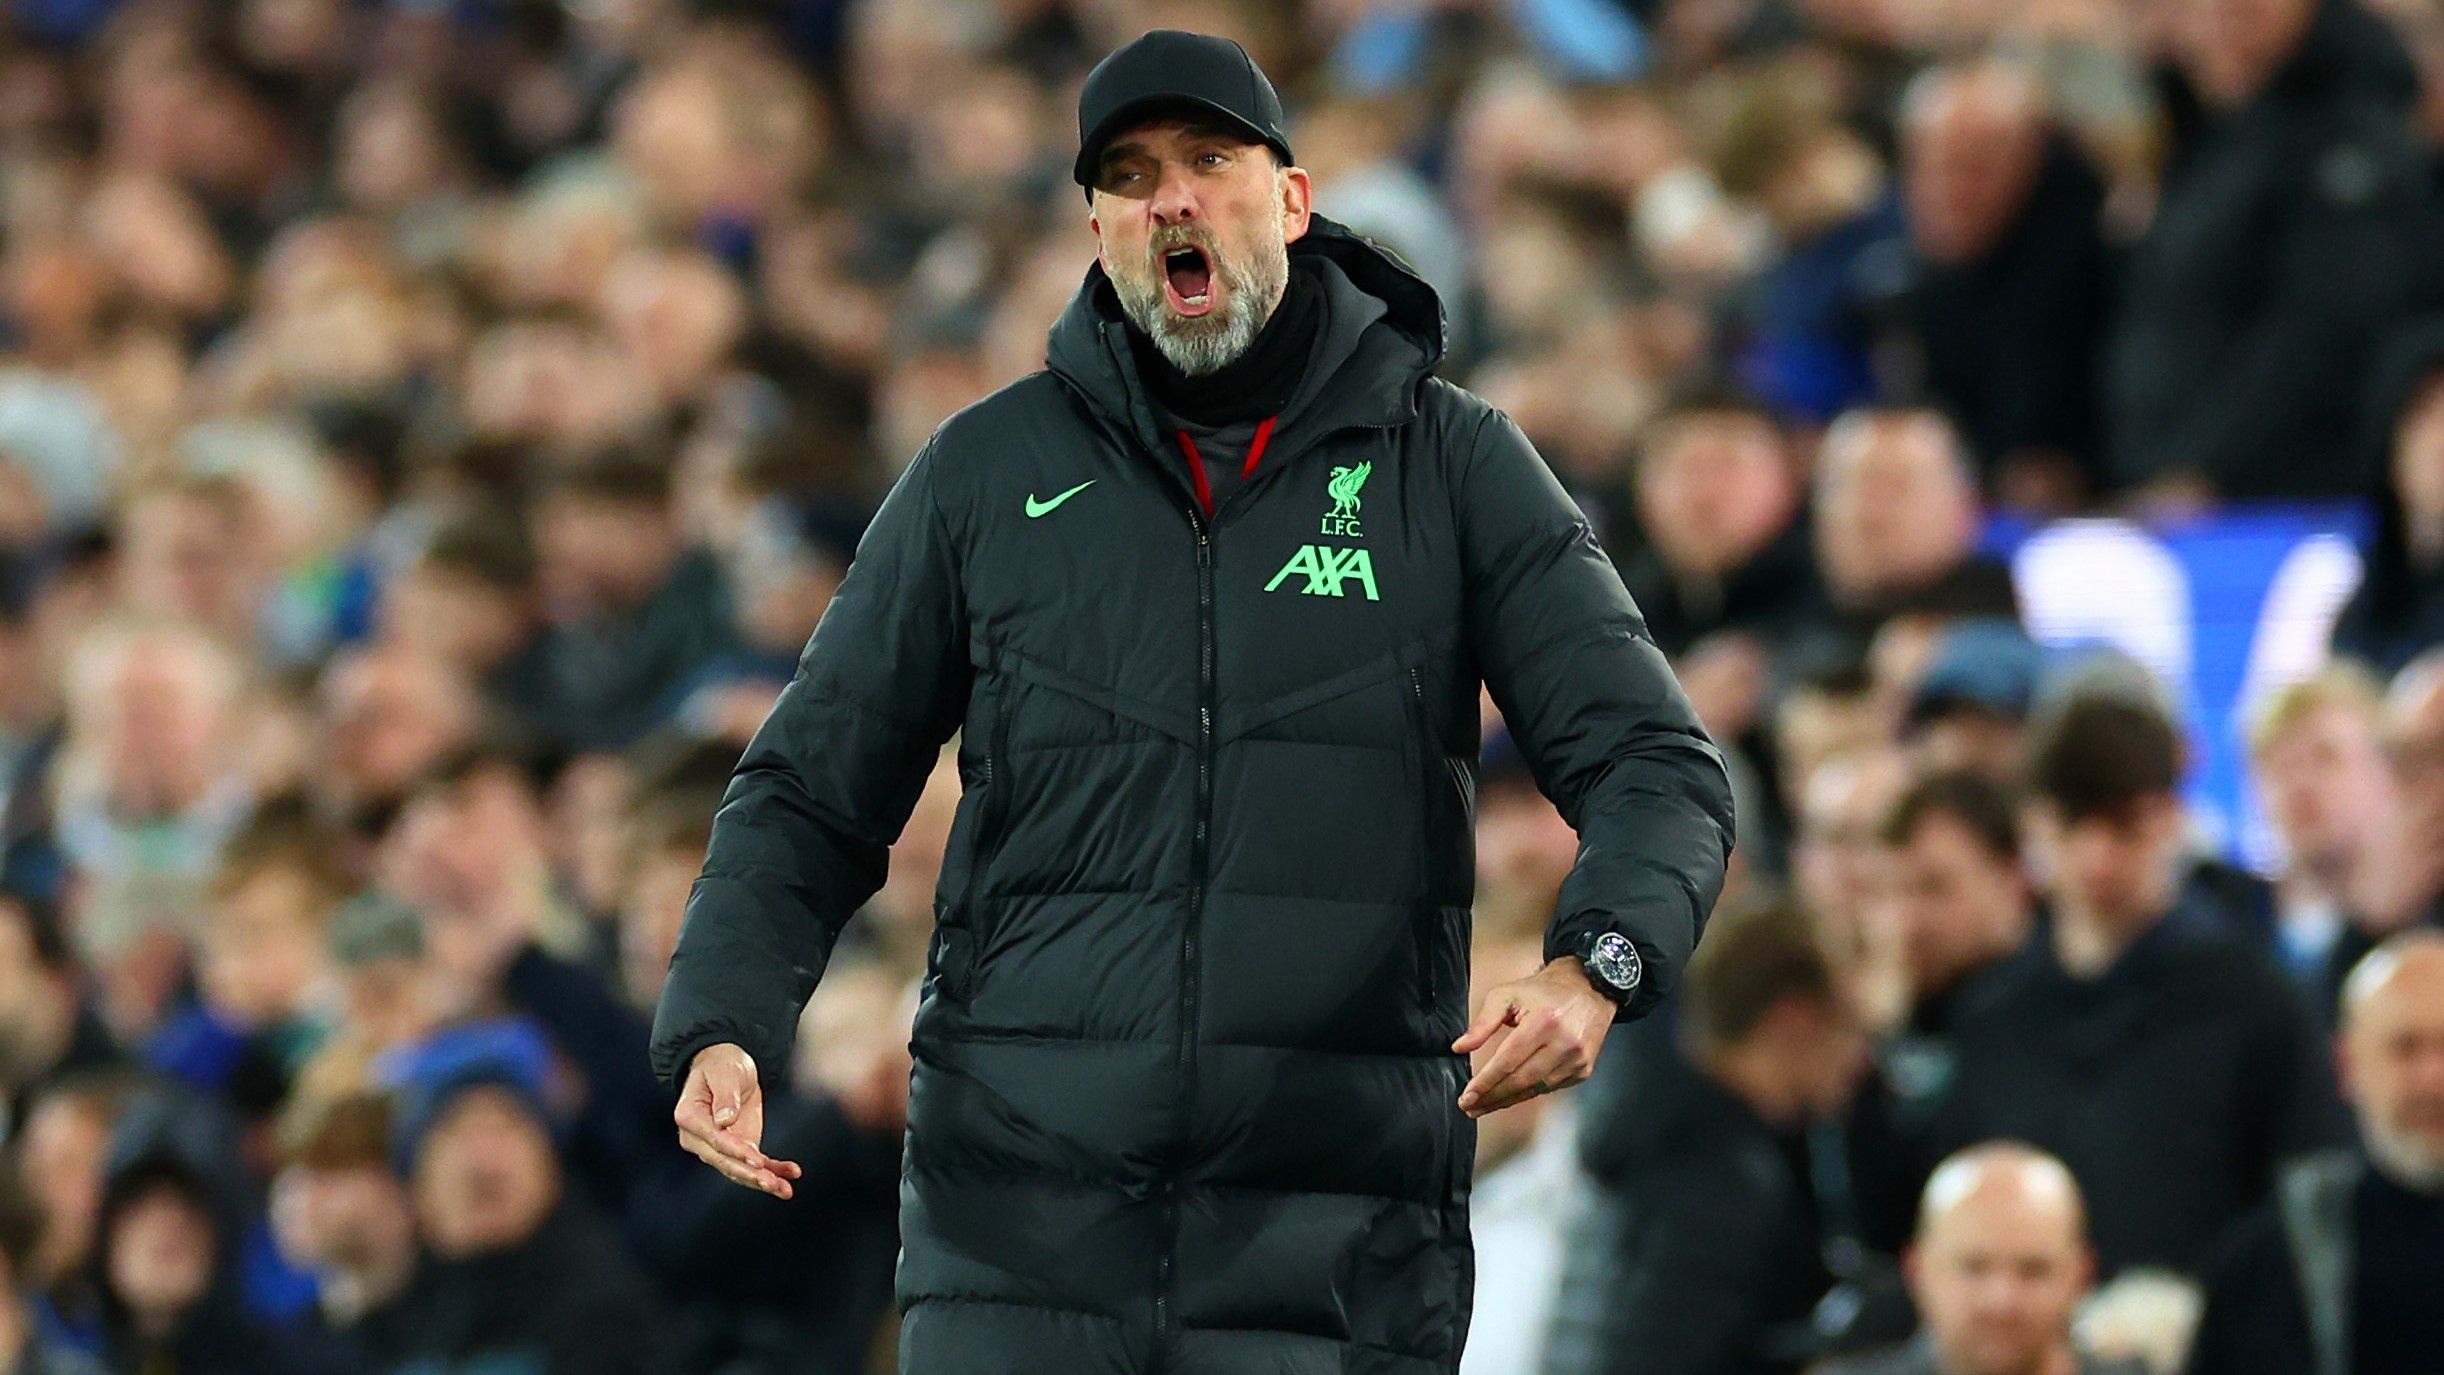 Csalódottan vette tudomásul Jürgen Klopp, hogy a Liverpool tizennégy év után kikapott az Everton otthonában. (Fotó: Getty Images)